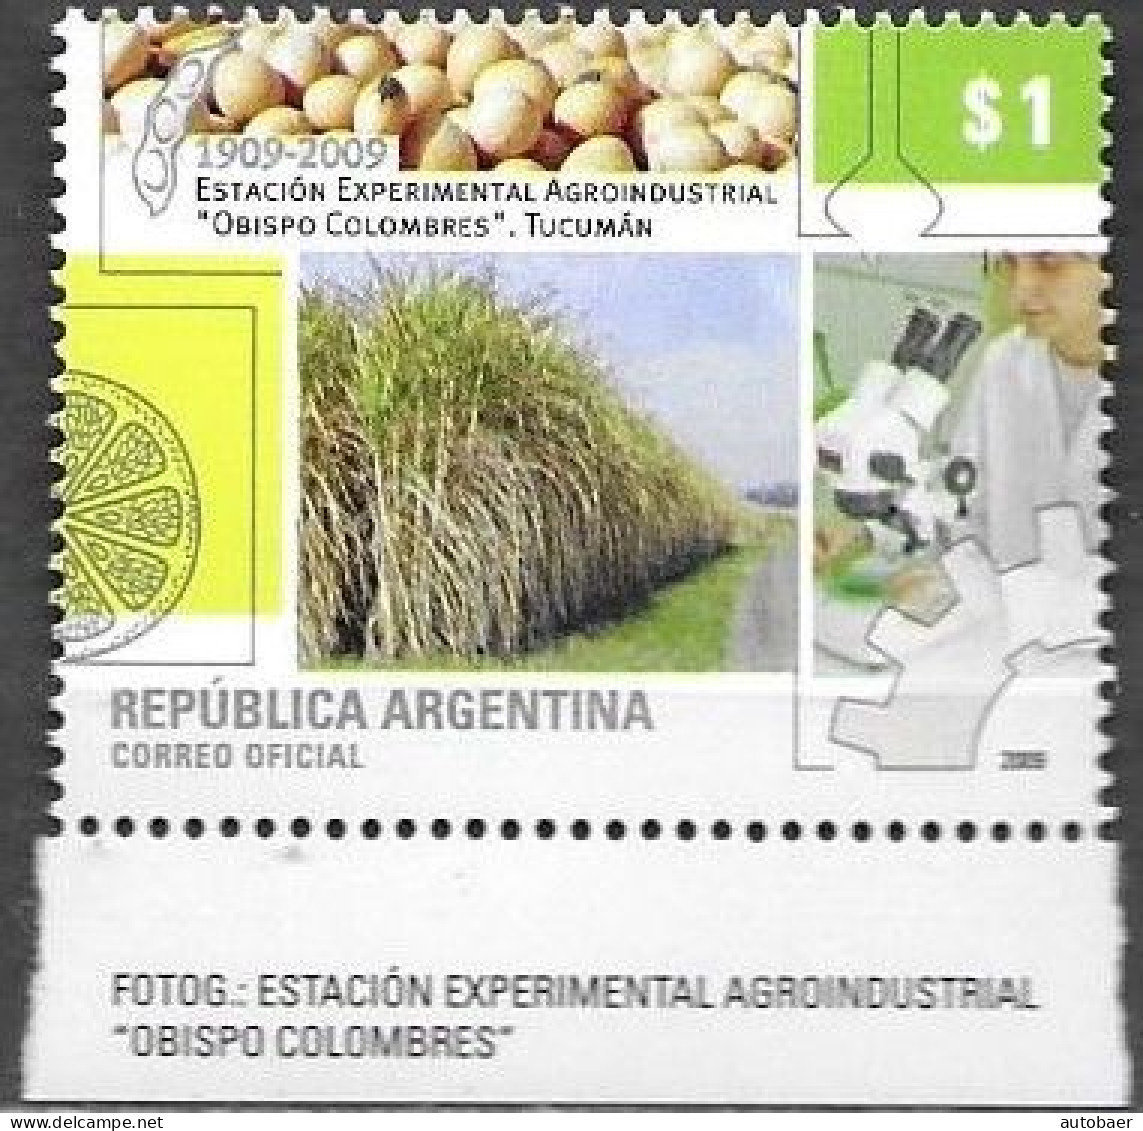 Argentina 2009 Agroindustrial Station Estacion Bishop Obispo Colombres Tucuman Michel 3254 MNH Postfrisch Neuf ** - Neufs